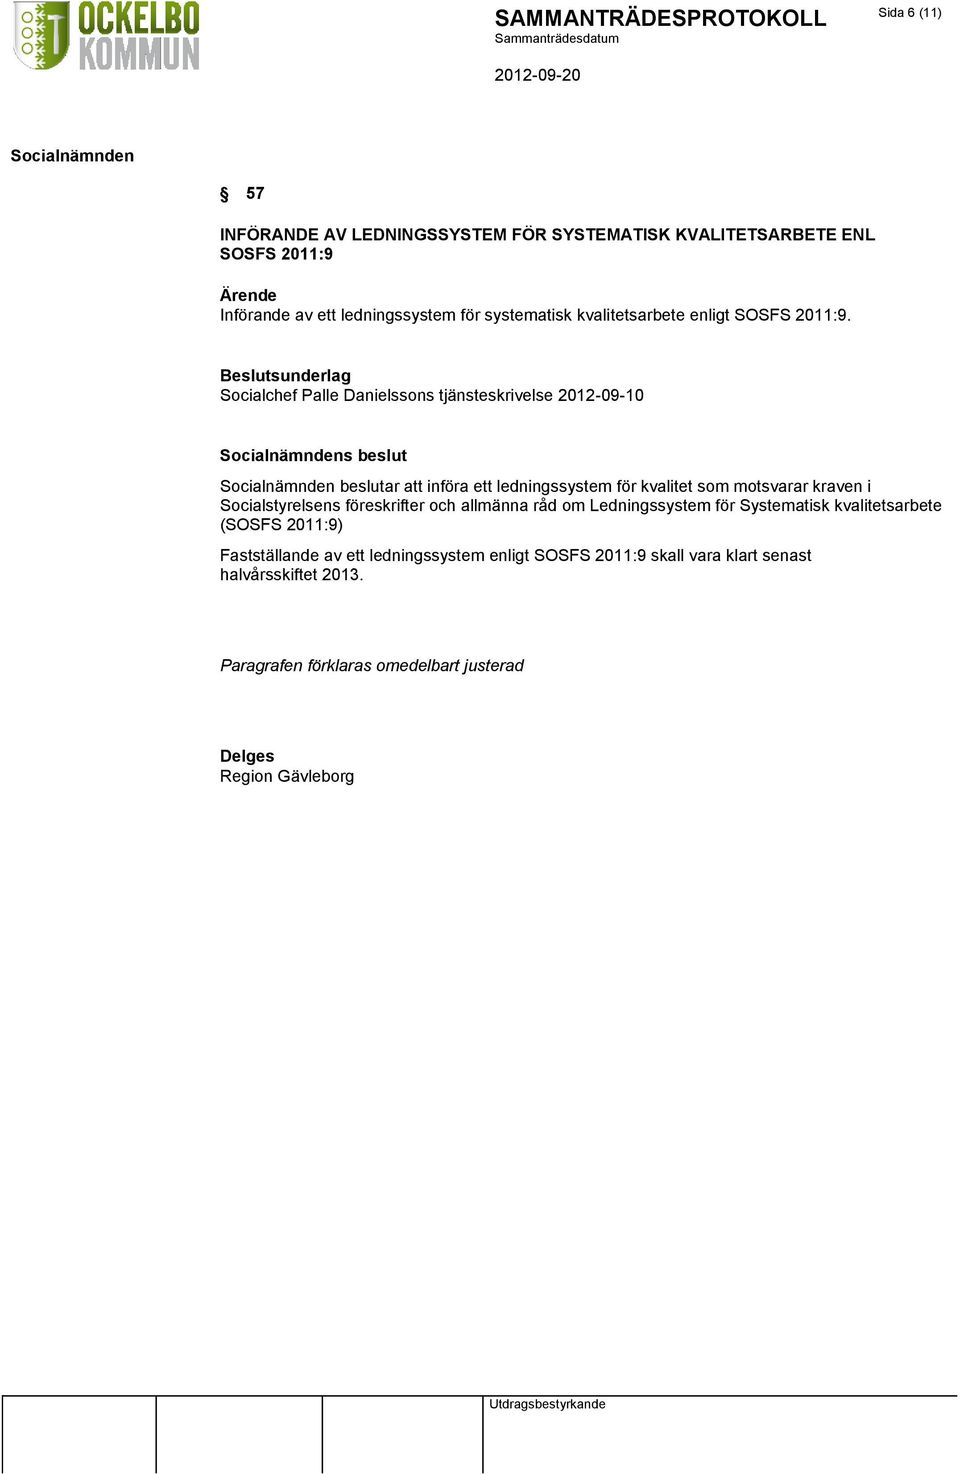 Socialchef Palle Danielssons tjänsteskrivelse 2012-09-10 s beslut beslutar att införa ett ledningssystem för kvalitet som motsvarar kraven i